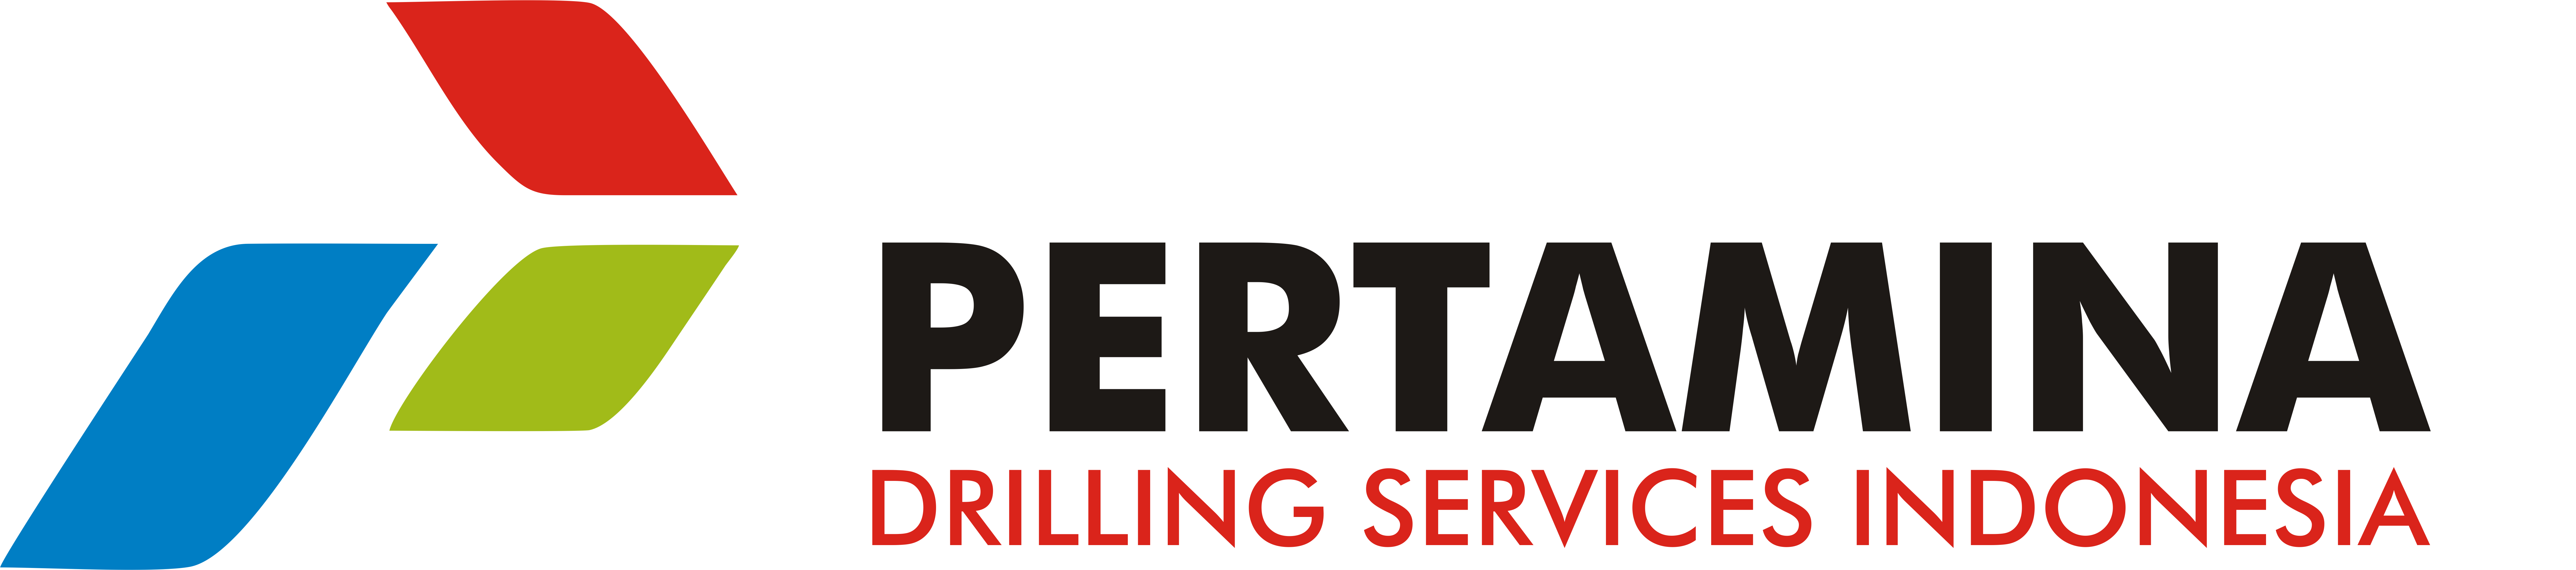 Pertamina_Drilling_Services_Indonesia